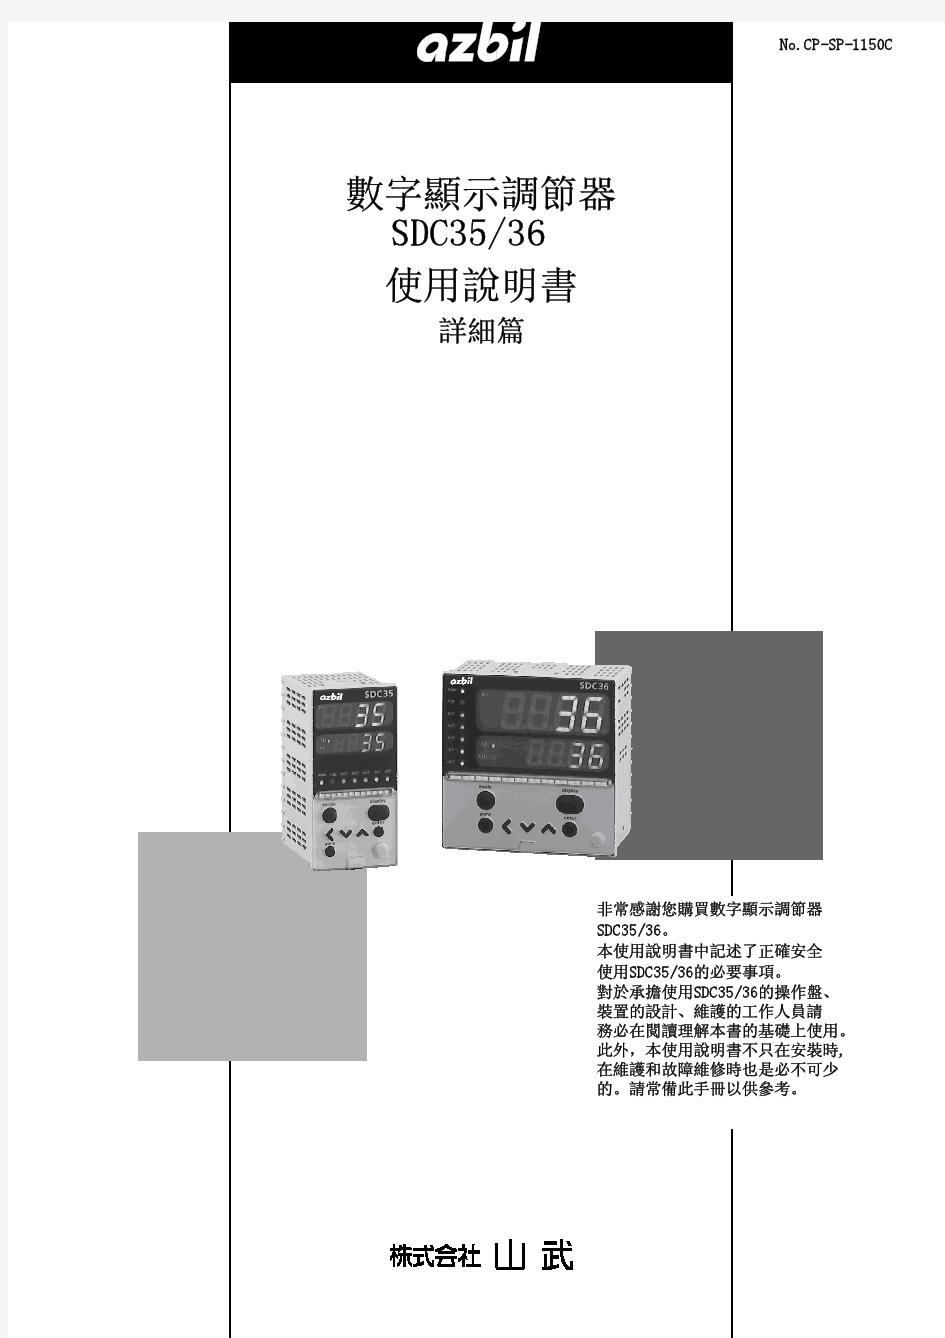 数字显示调节器SDC3536使用说明书(详细篇)